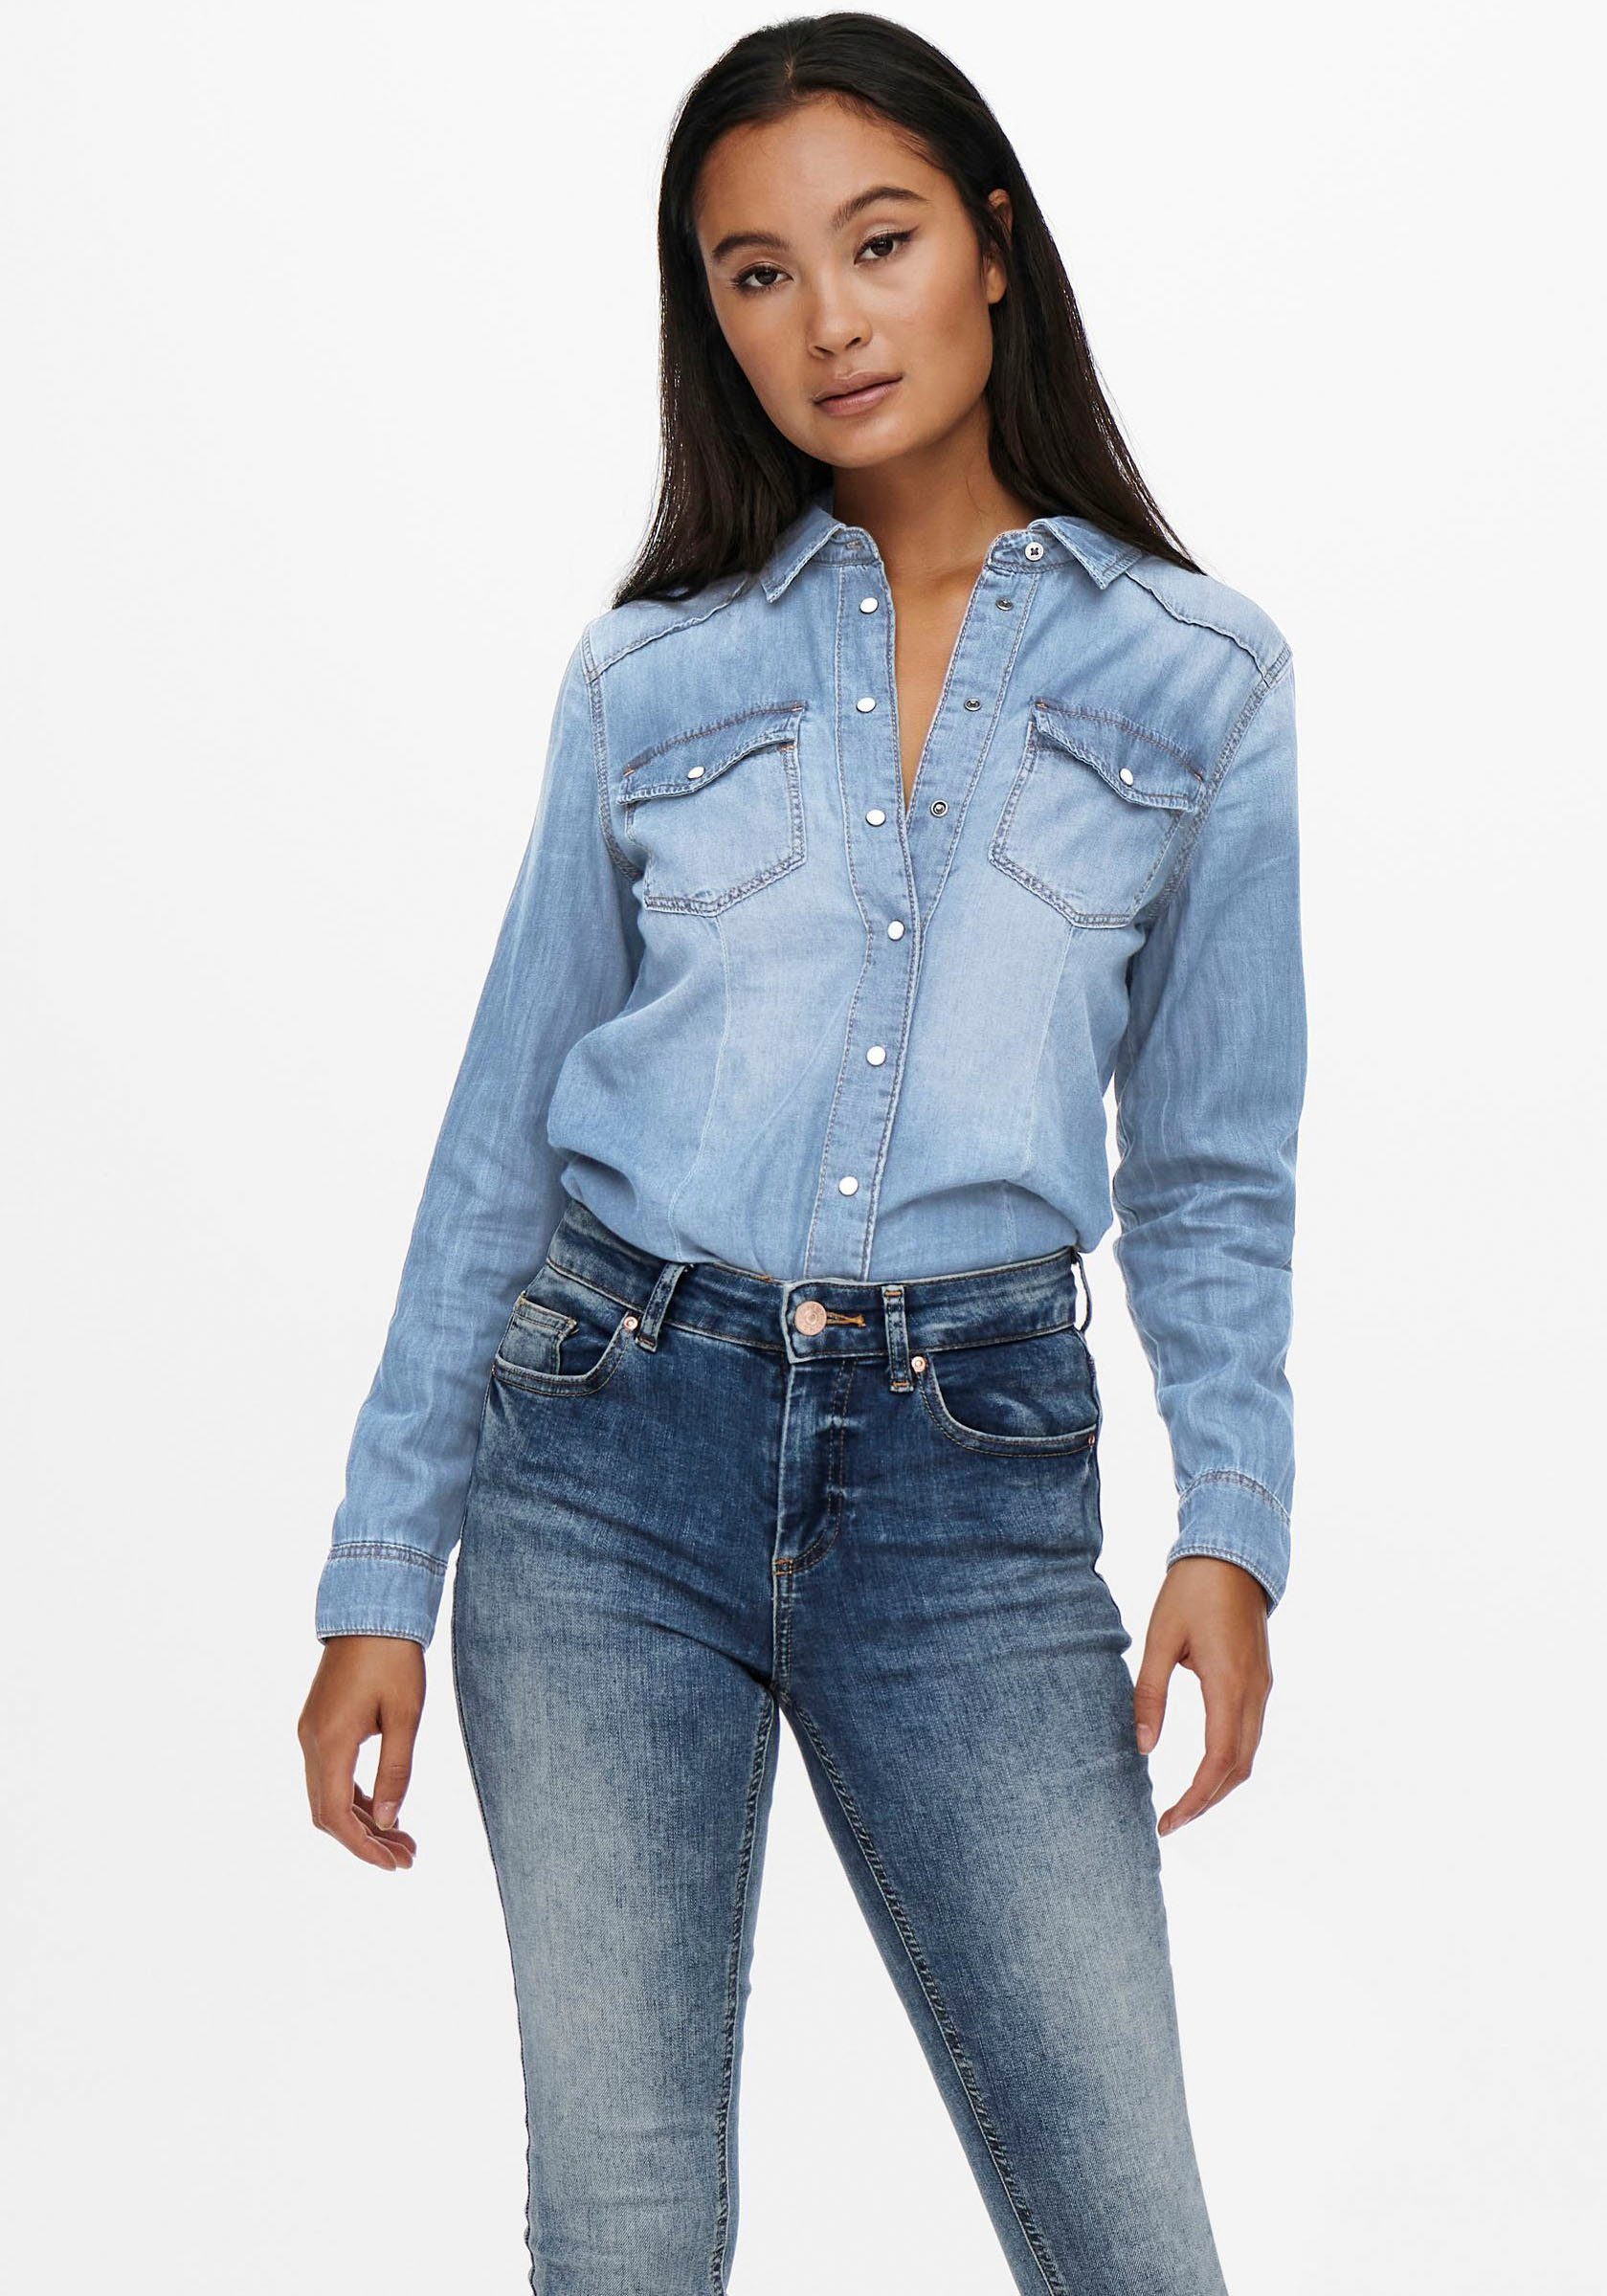 Günstige Blusen für Damen online kaufen » Blusen SALE | OTTO